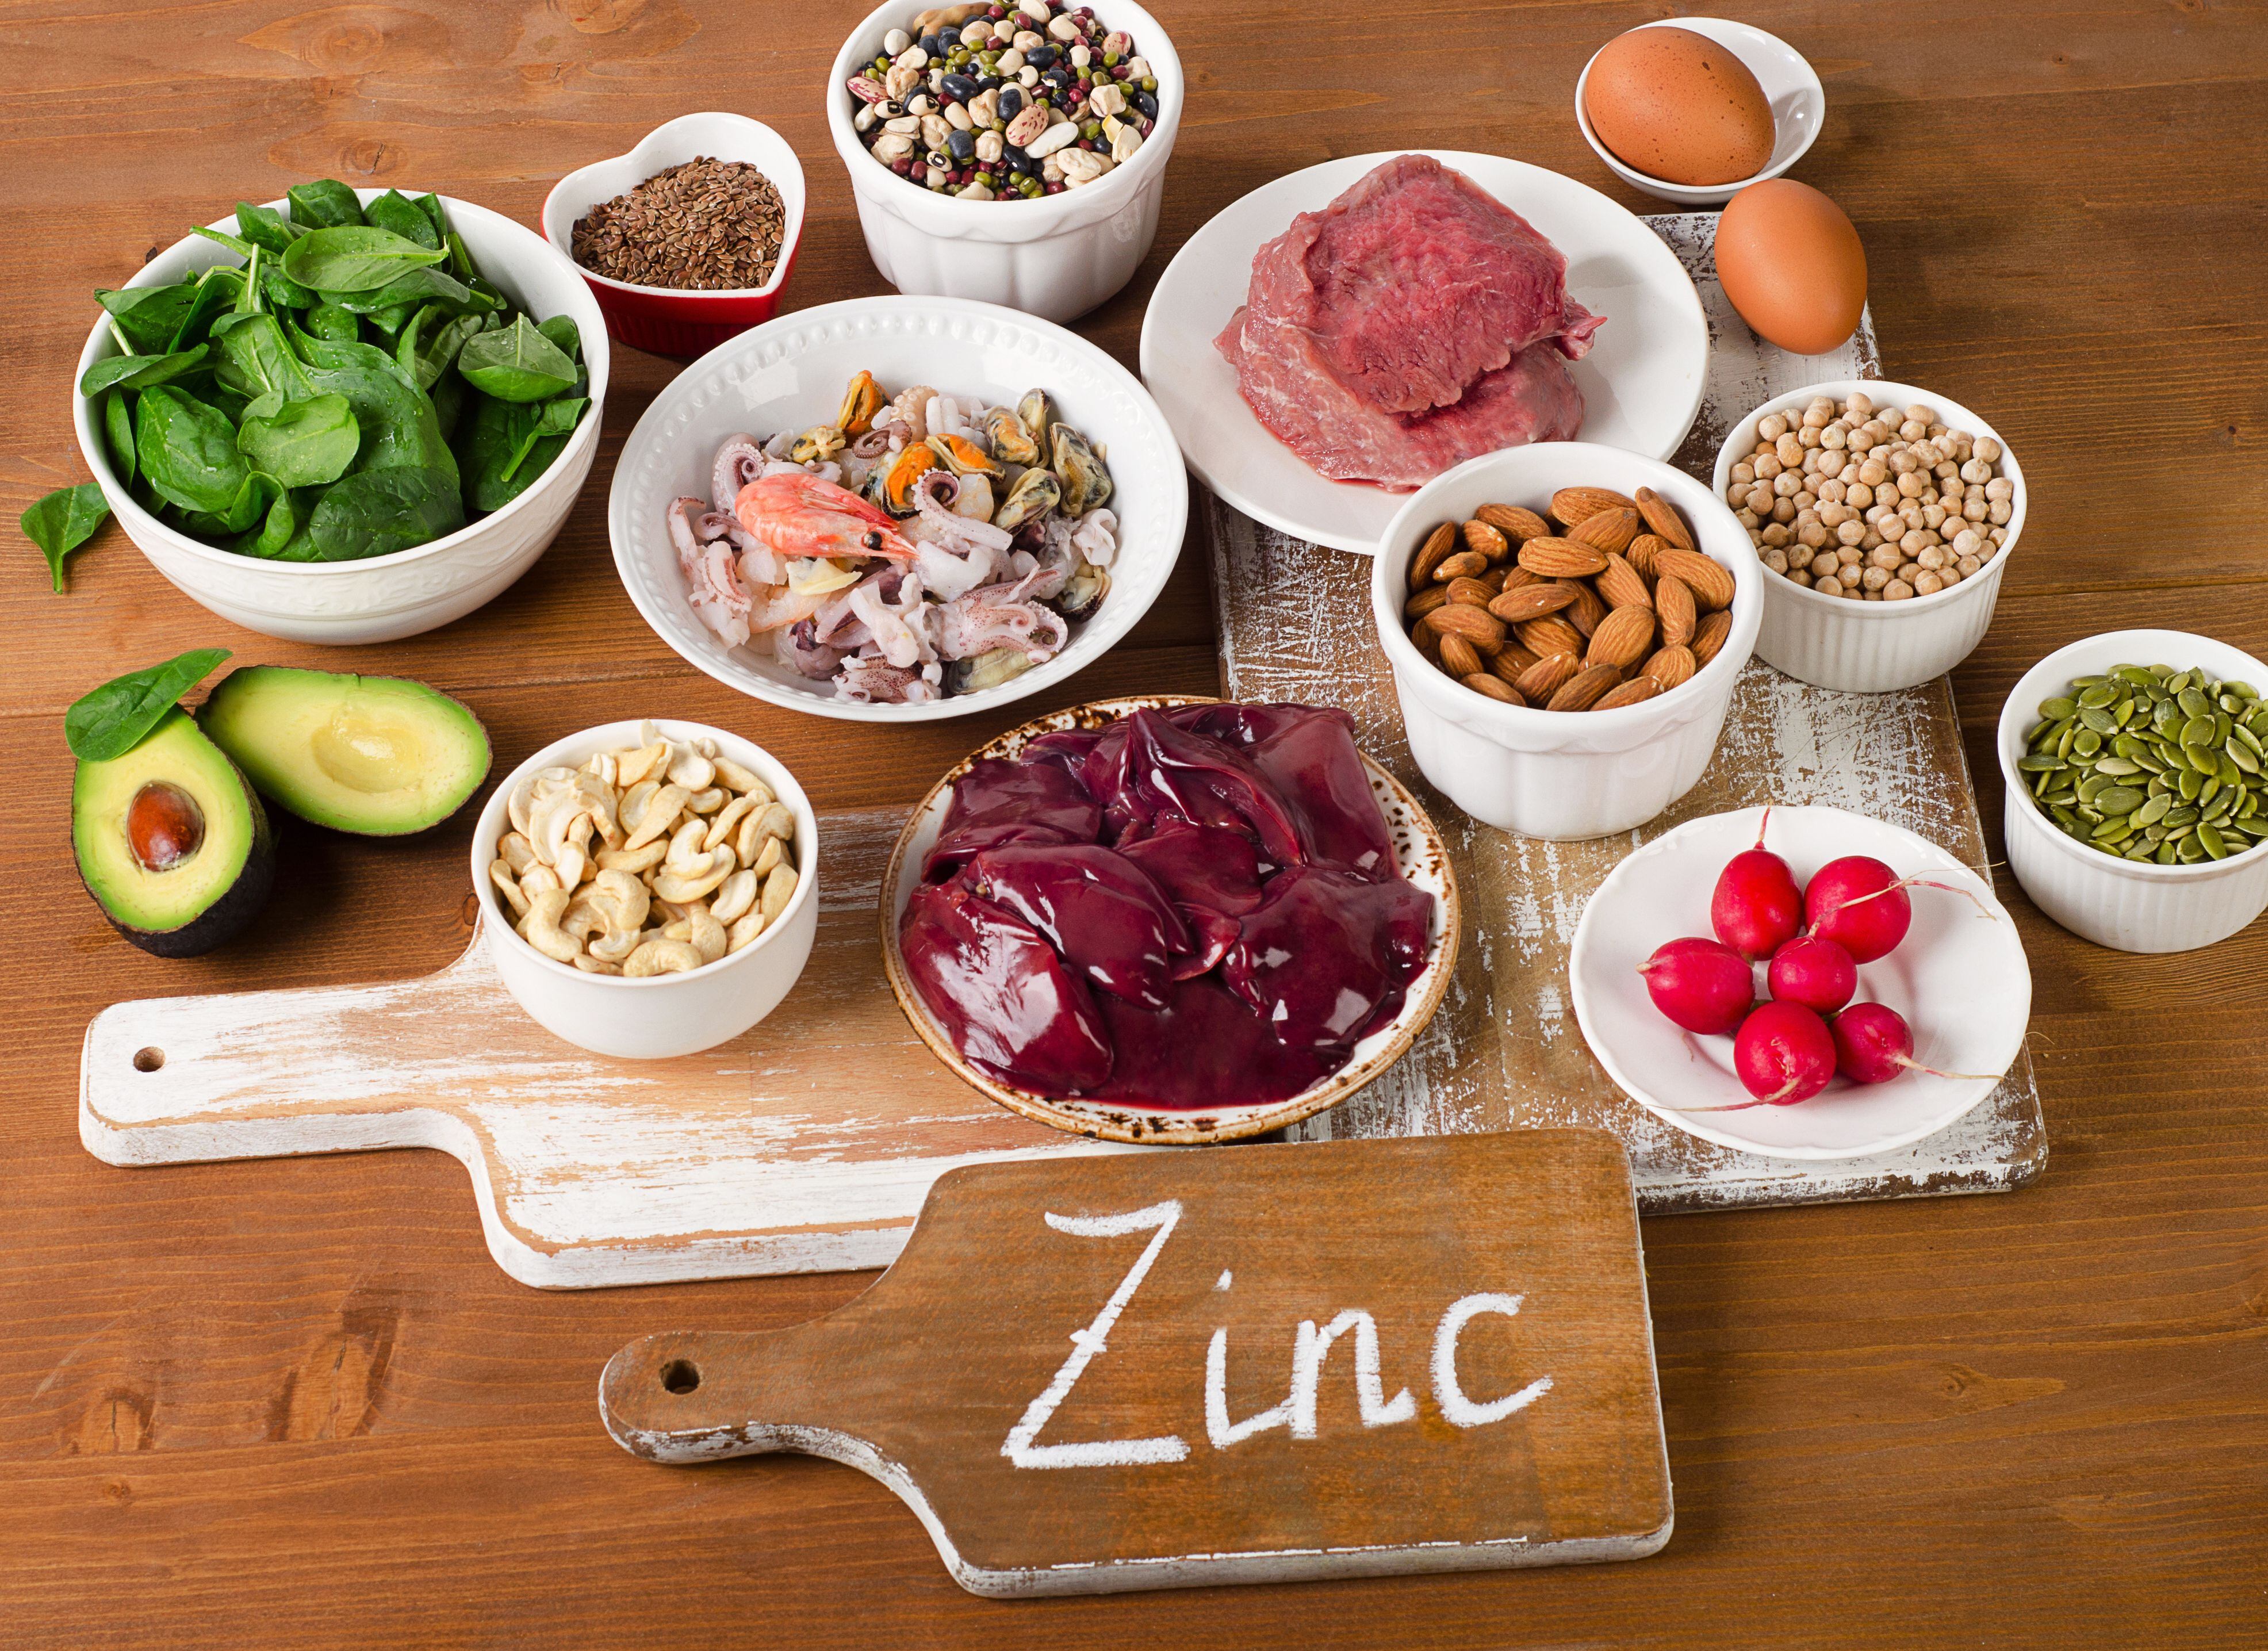 Incorporar Zinc es de suma importancia en nuestra dieta